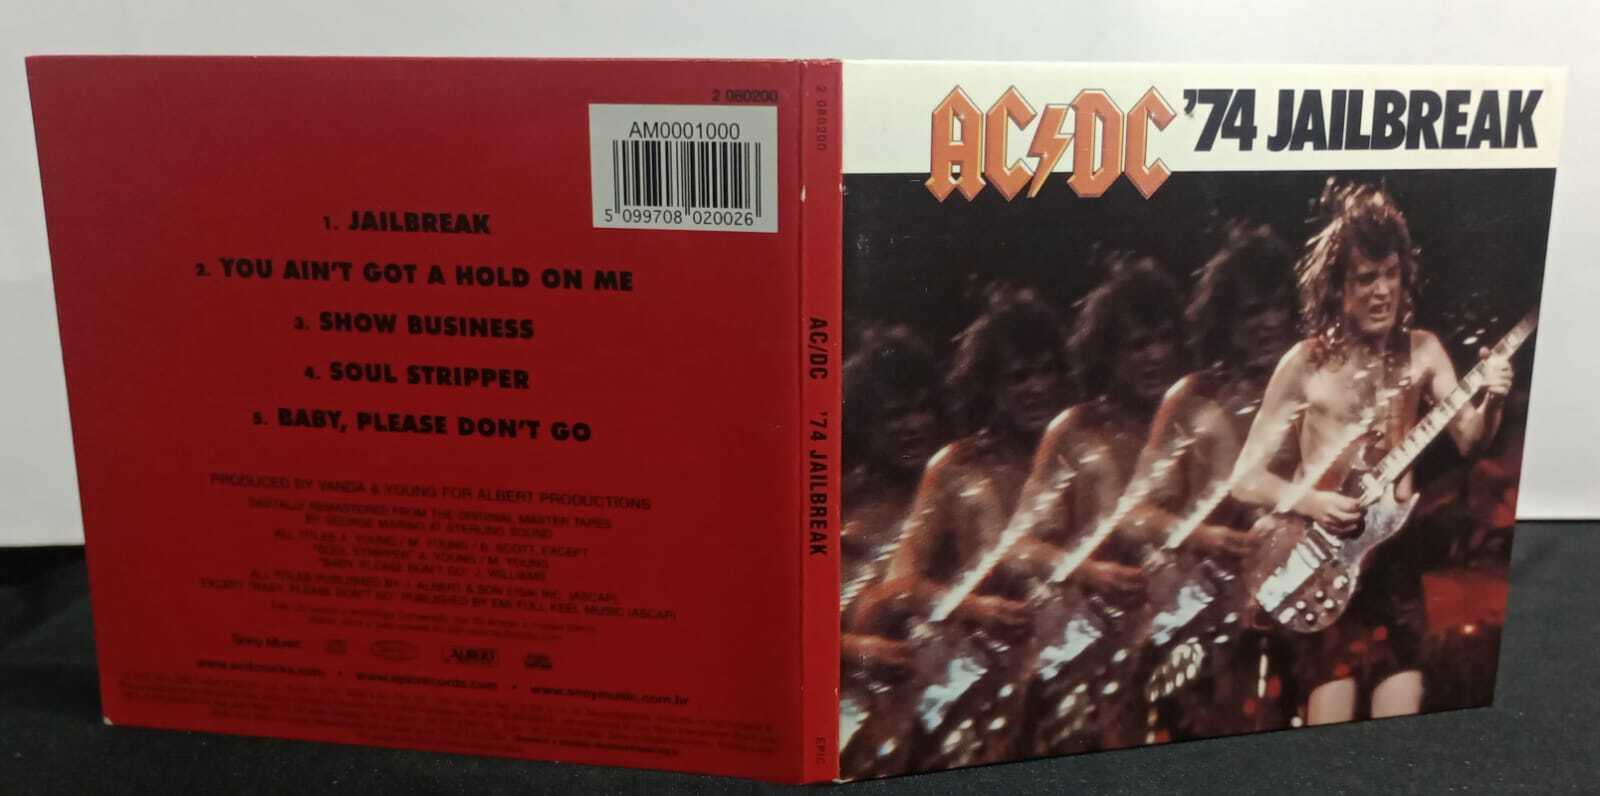 CD - AC/DC - 74 Jailbreak (Digipack)